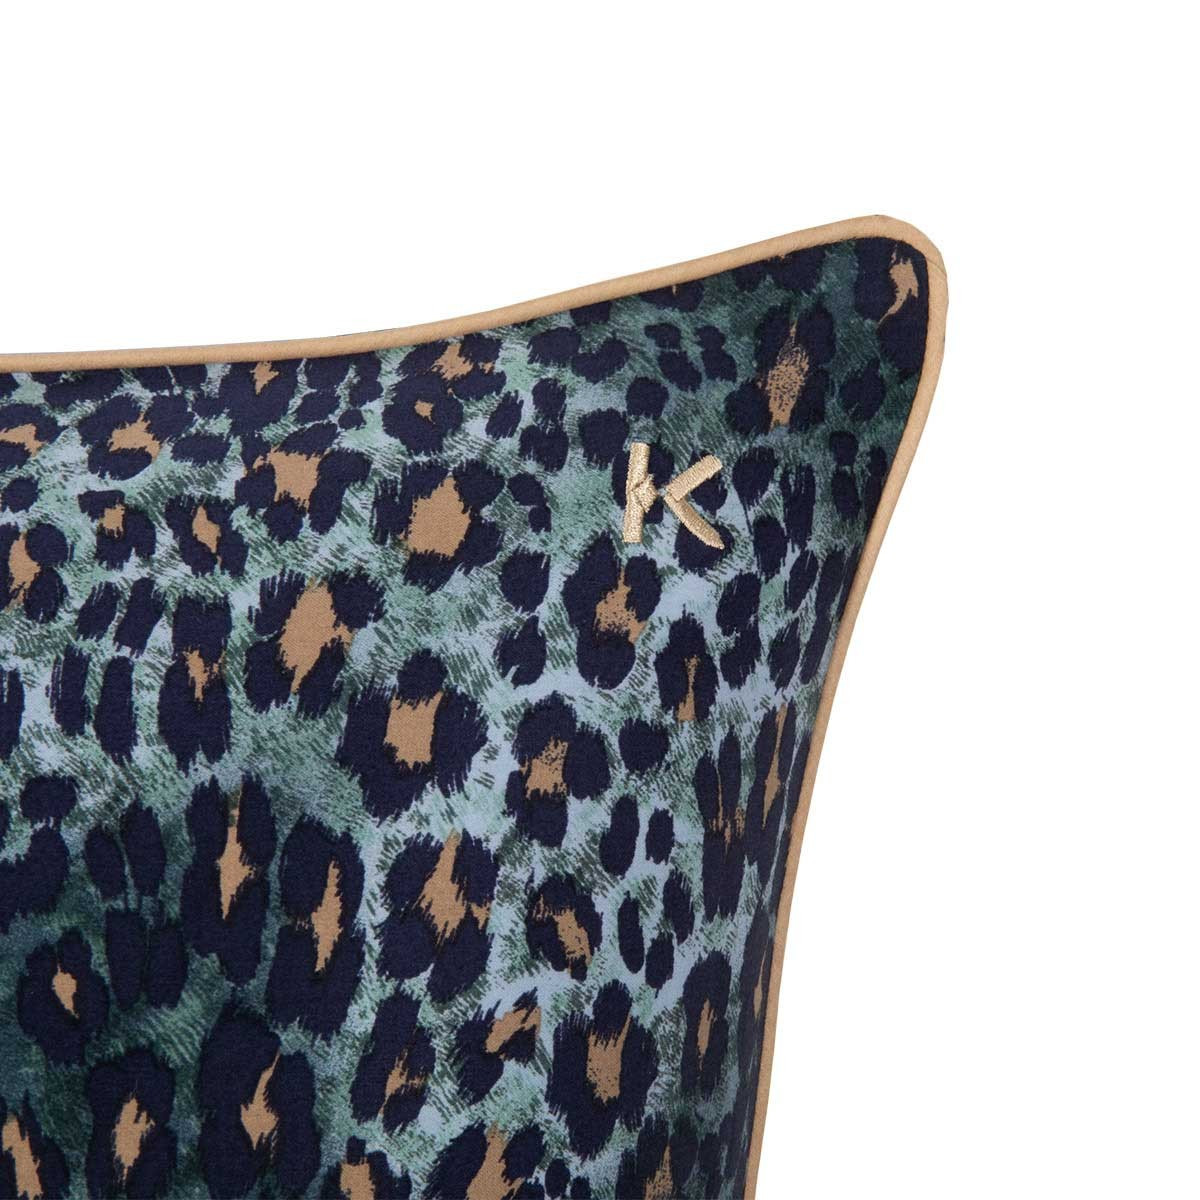 комплект постельного белья Kenzo Leopard - купить в магазине Yves Delorme Russia